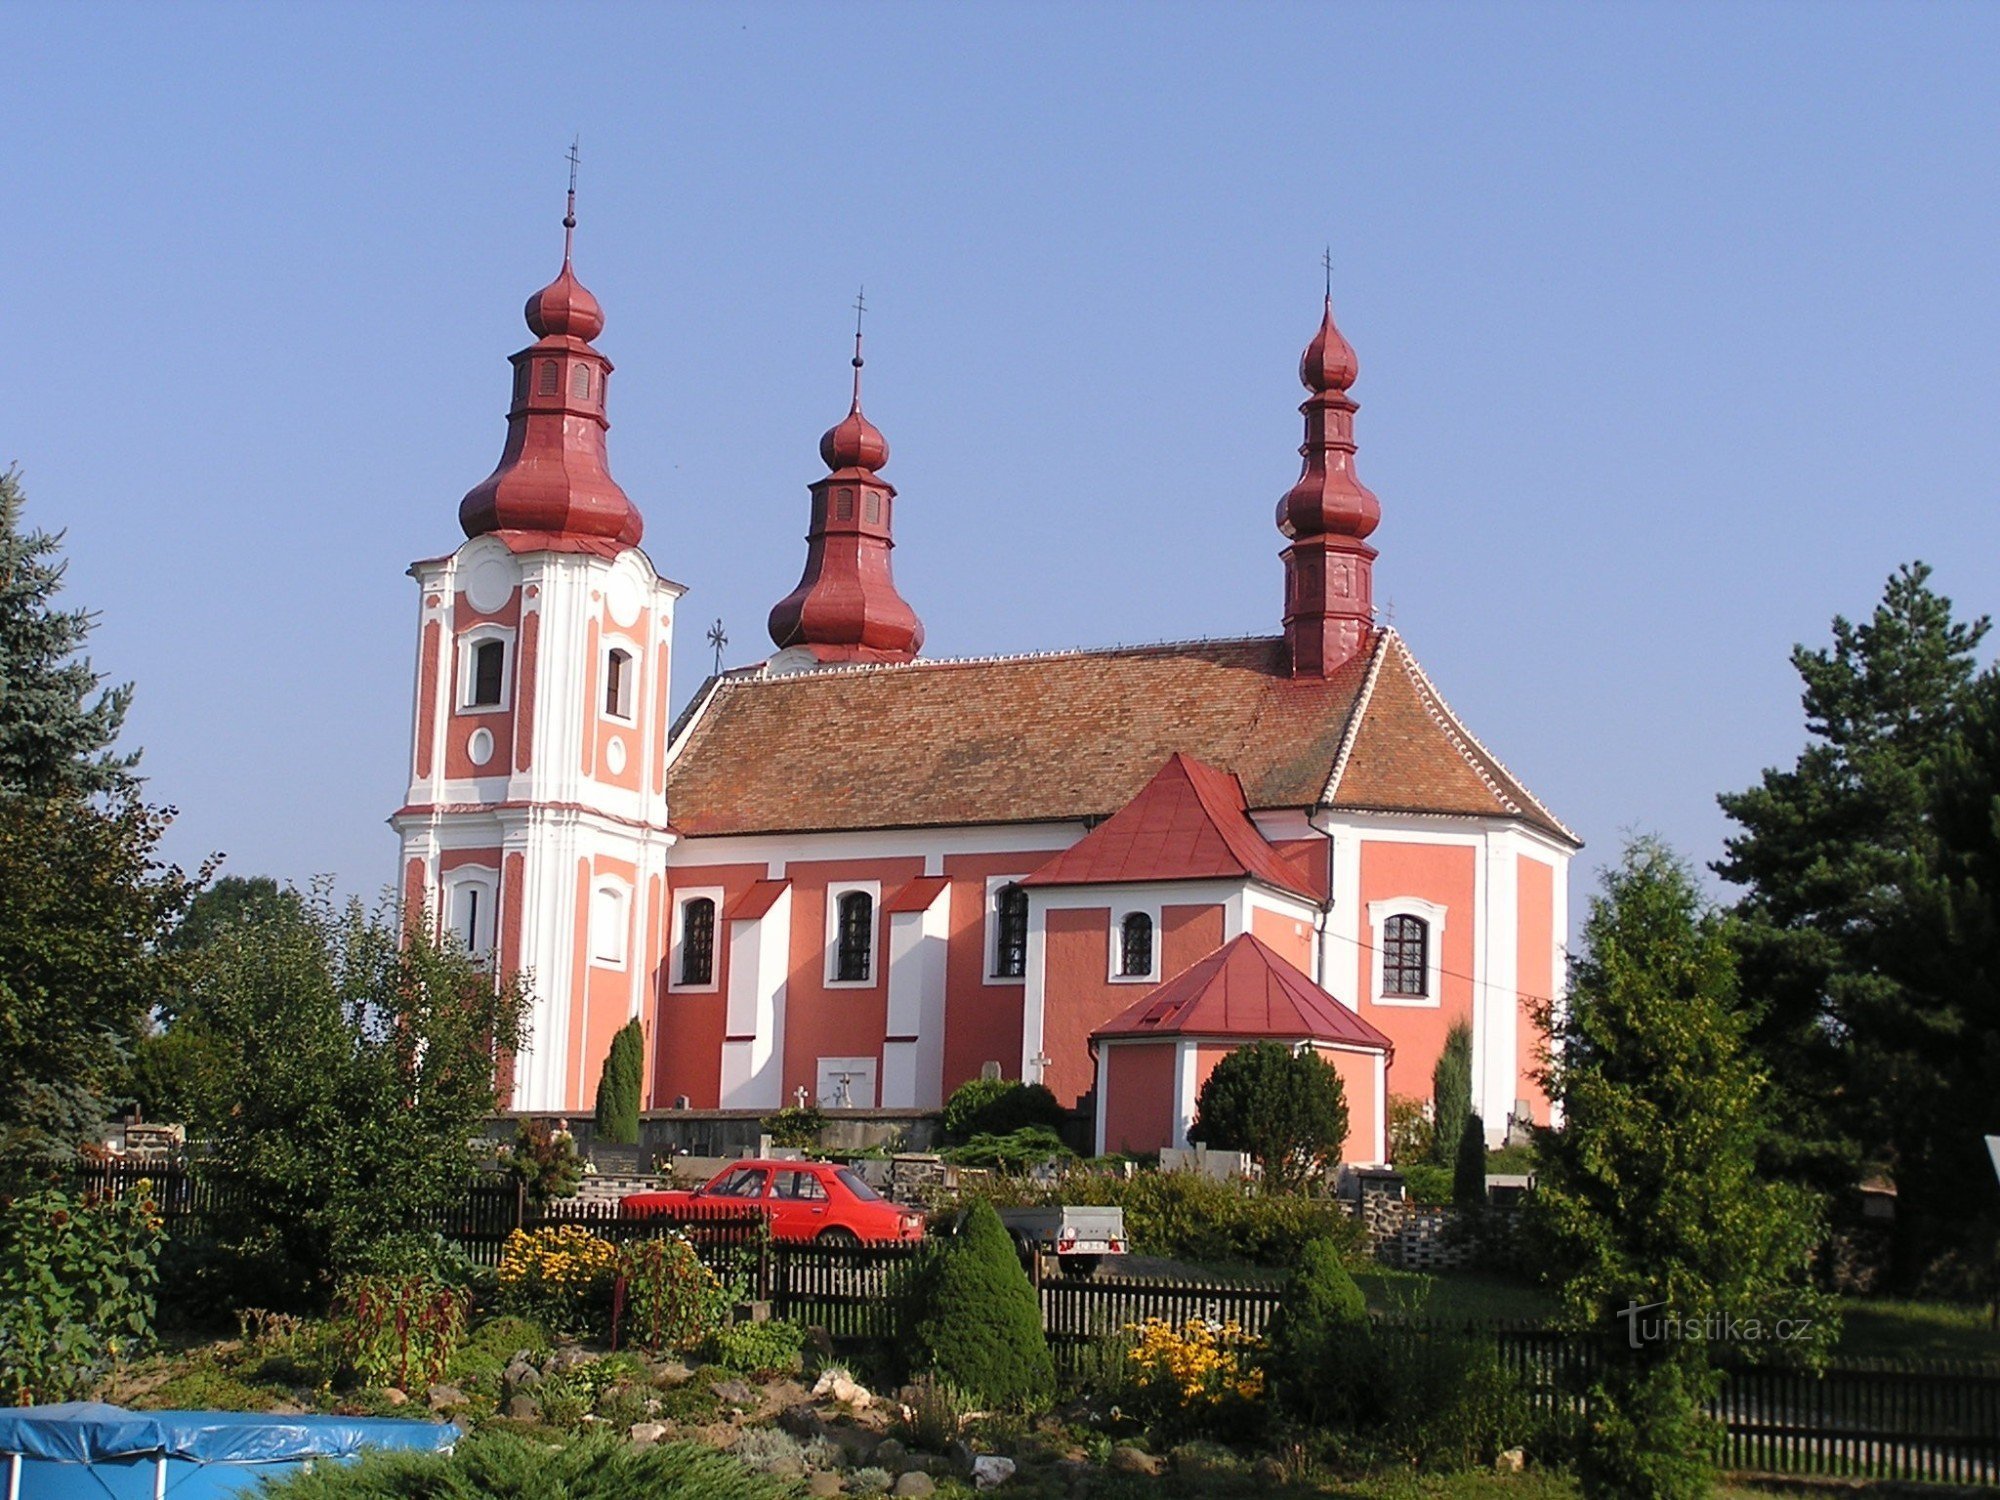 Cerkev sv. Bartolomeja v Rozsochyju - 3.8.2003. avgust XNUMX